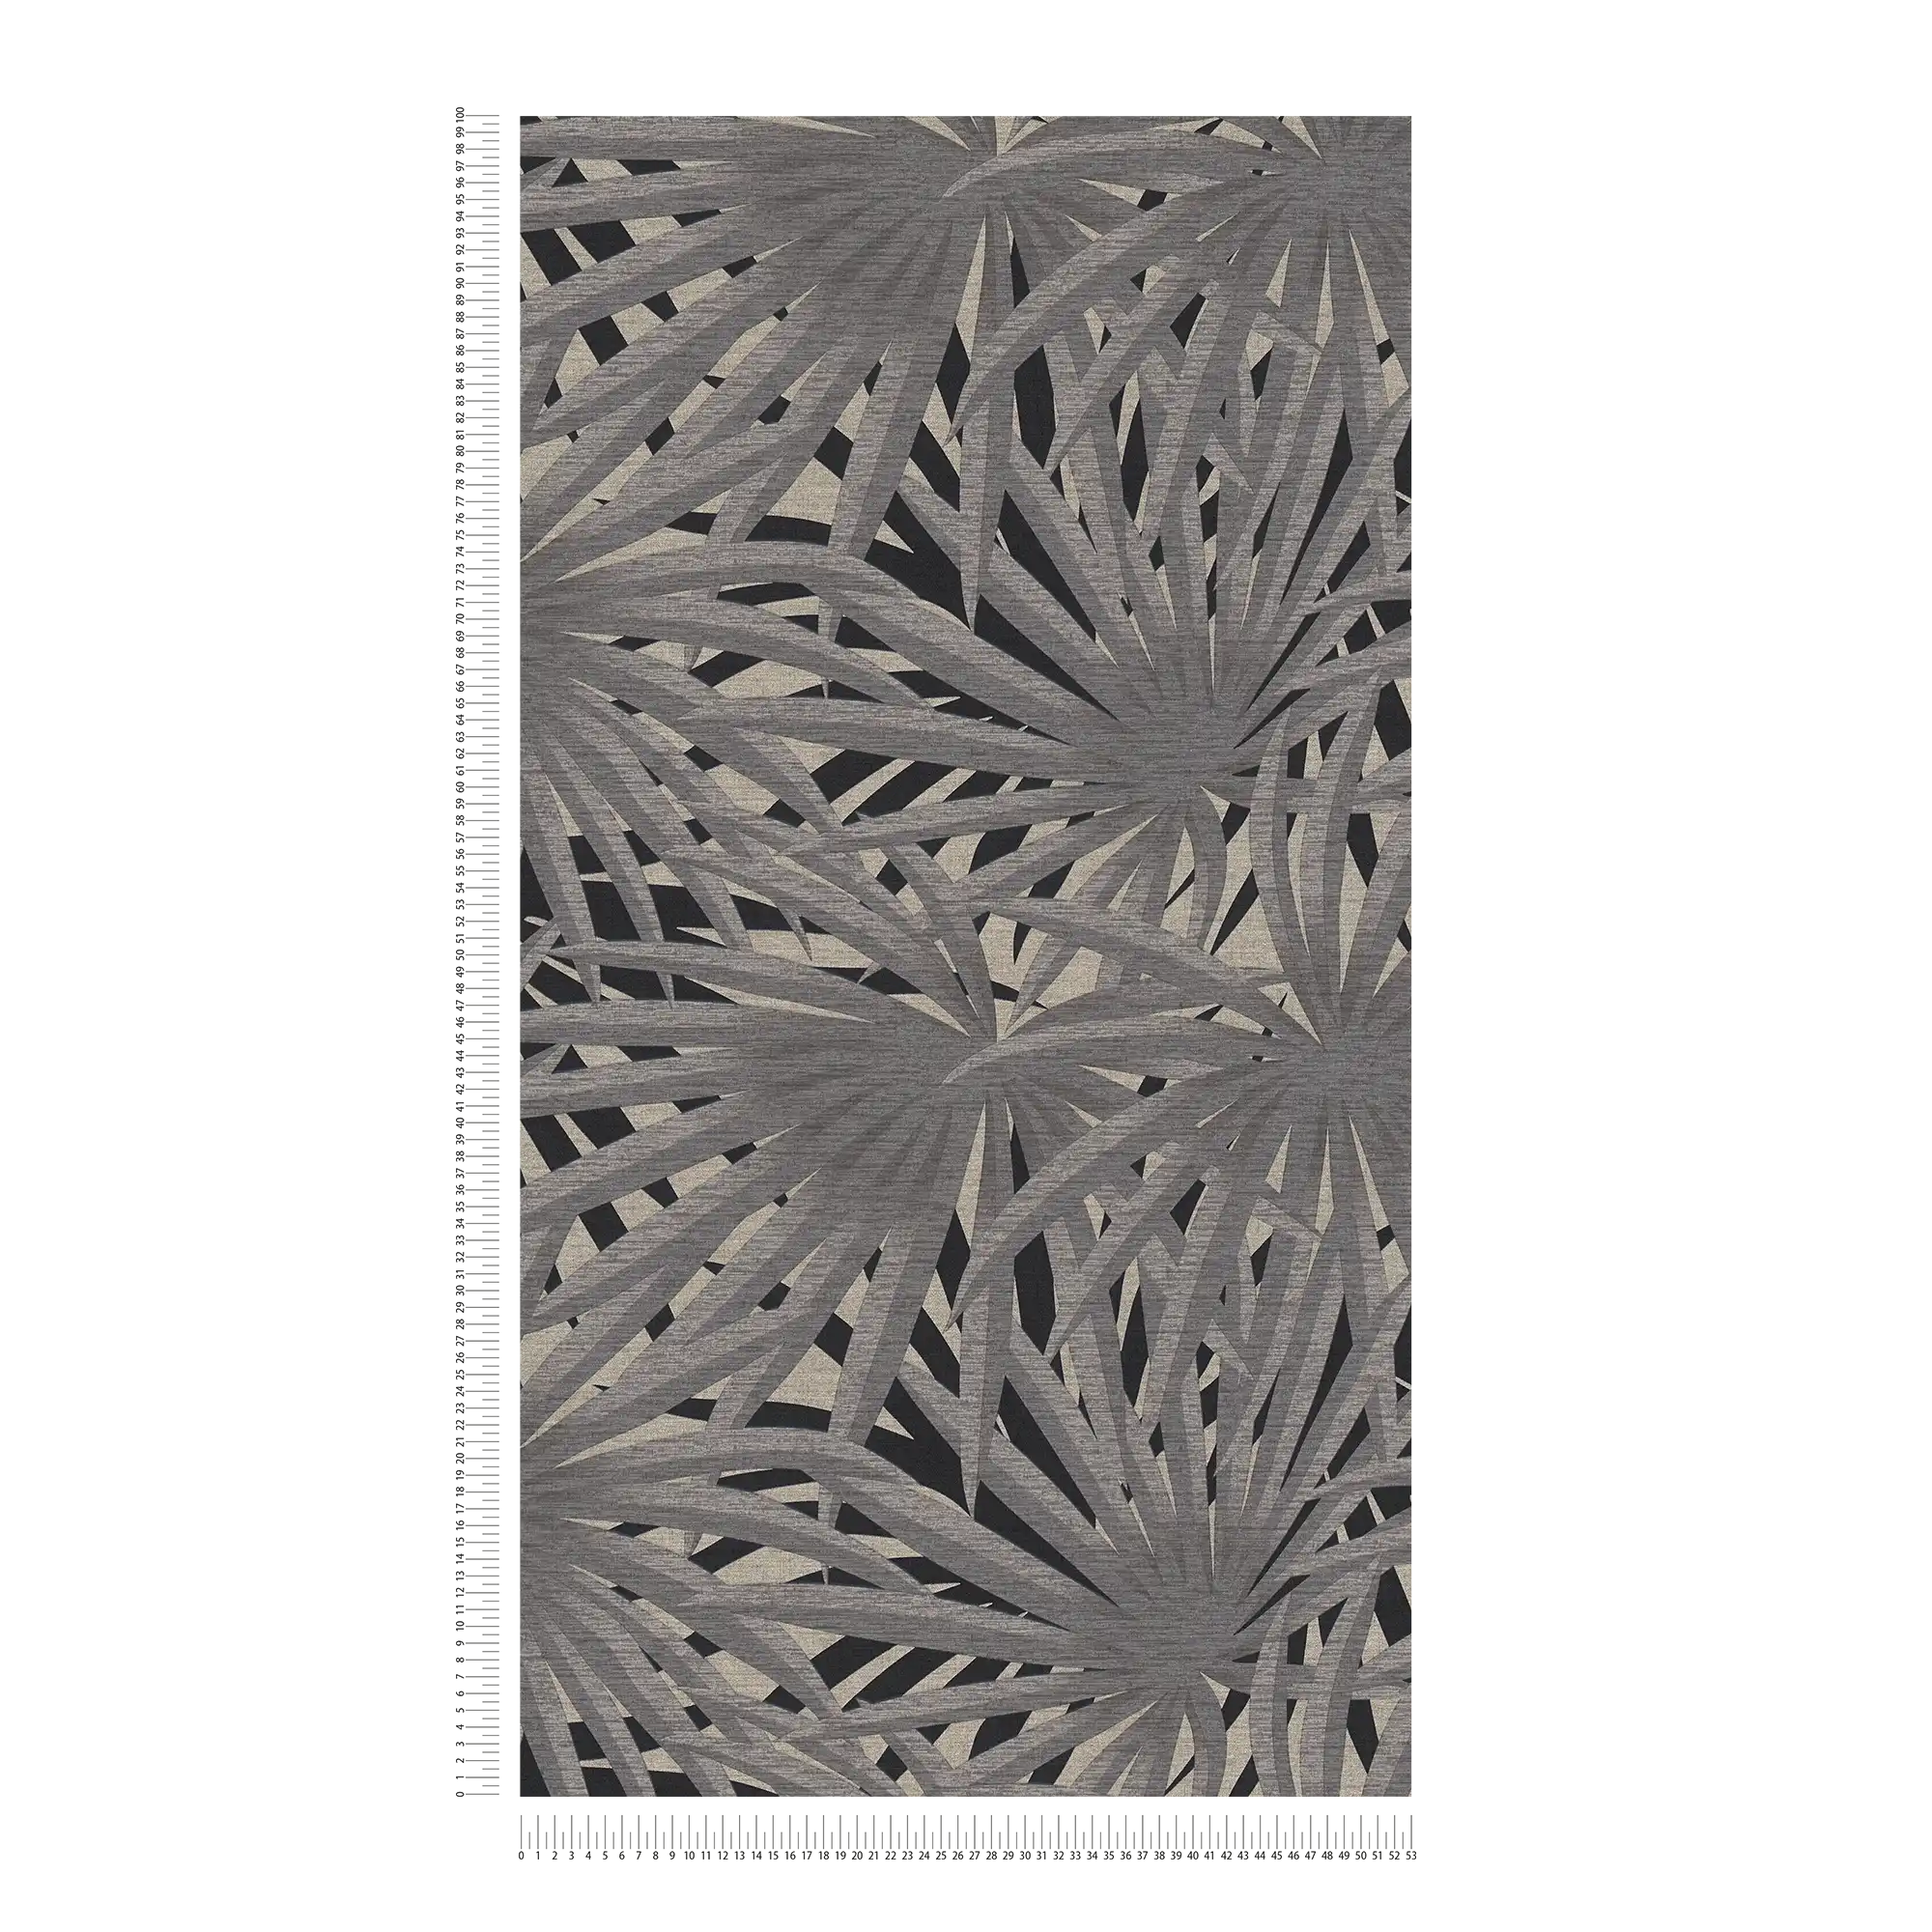             Vliestapete Dschungel Design mit Metallic-Effekt – Grau, Metallic, Schwarz
        